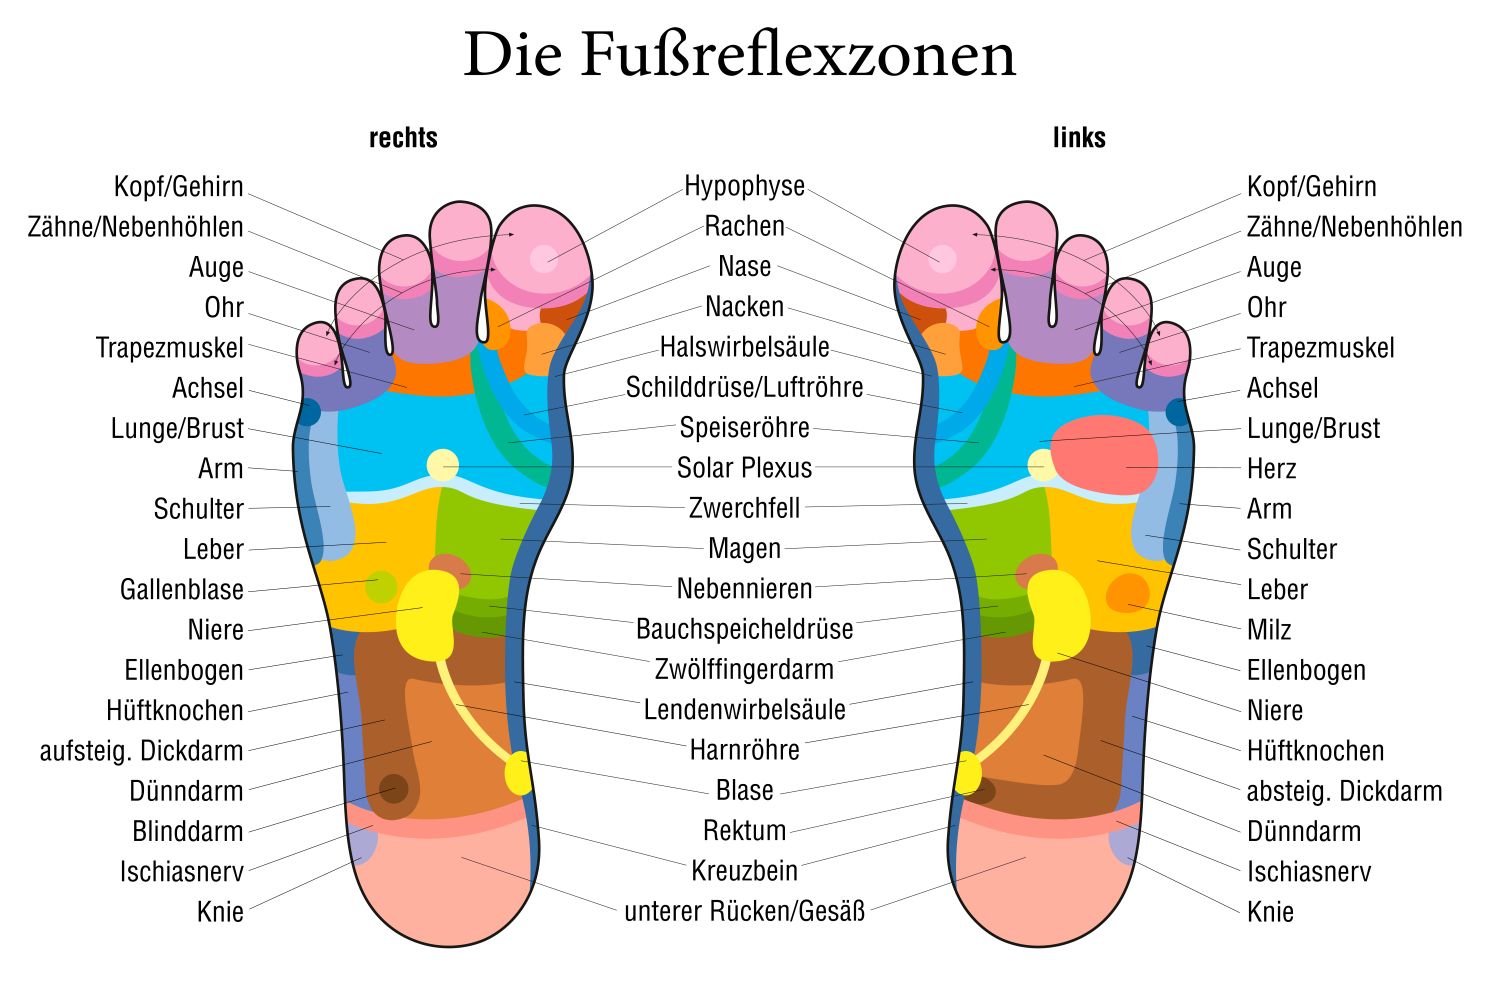 Die Fußreflexzonen zum Ausdrucken als Download